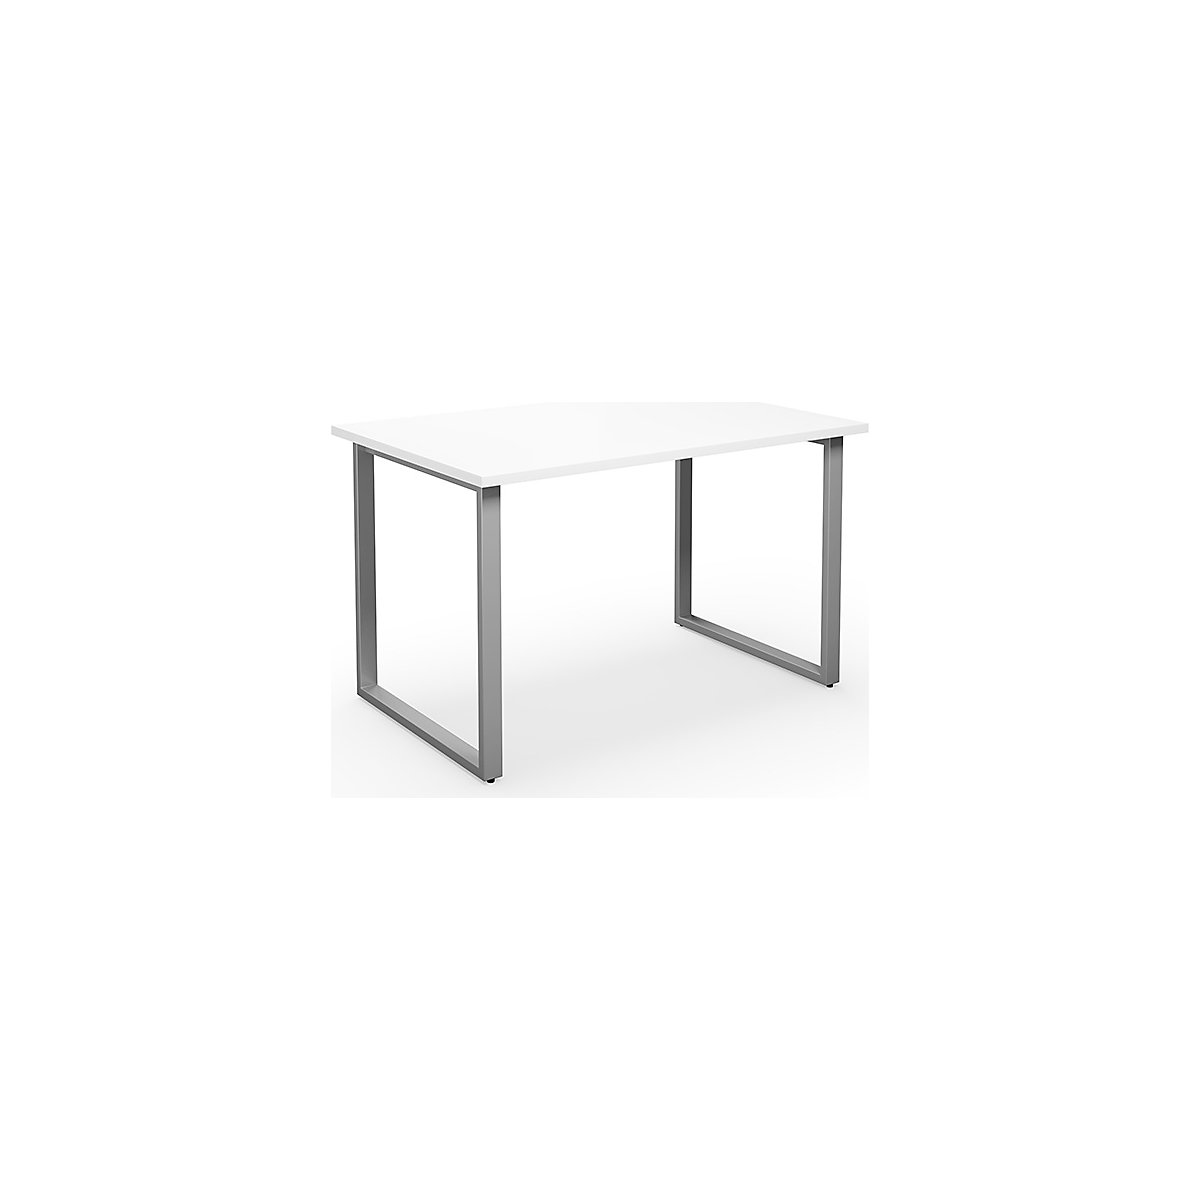 DUO-O multi-purpose desk, straight tabletop, WxD 1200 x 800 mm, white, silver-9